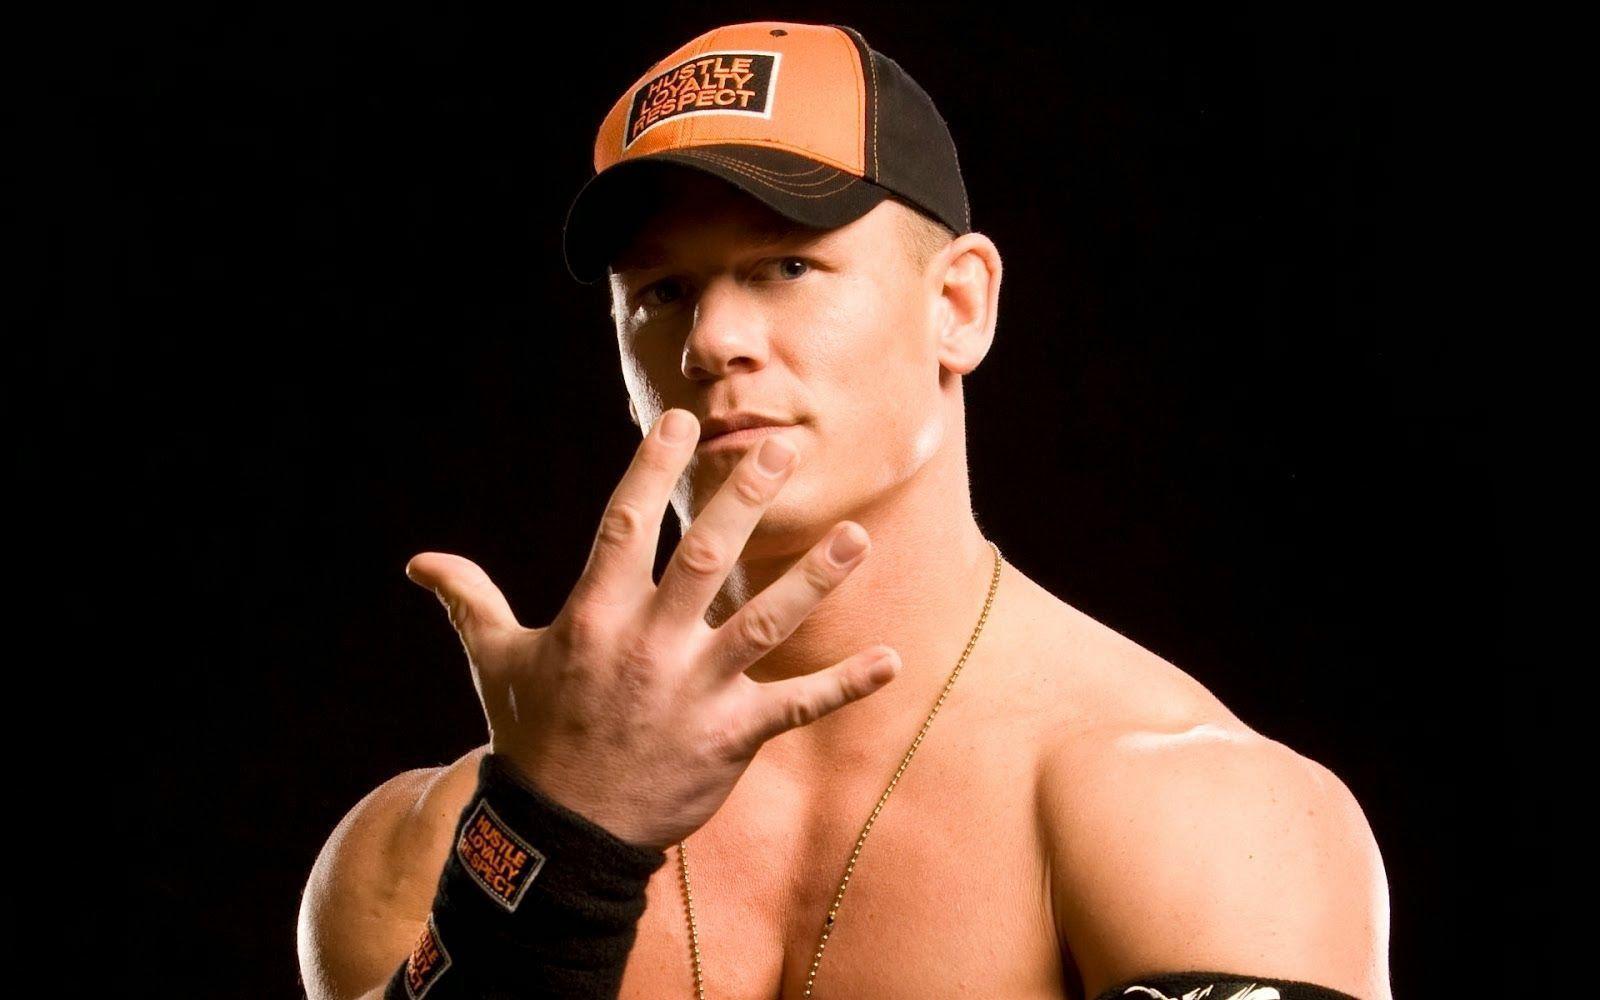 WWE John Cena Mobile Wallpaper 2015